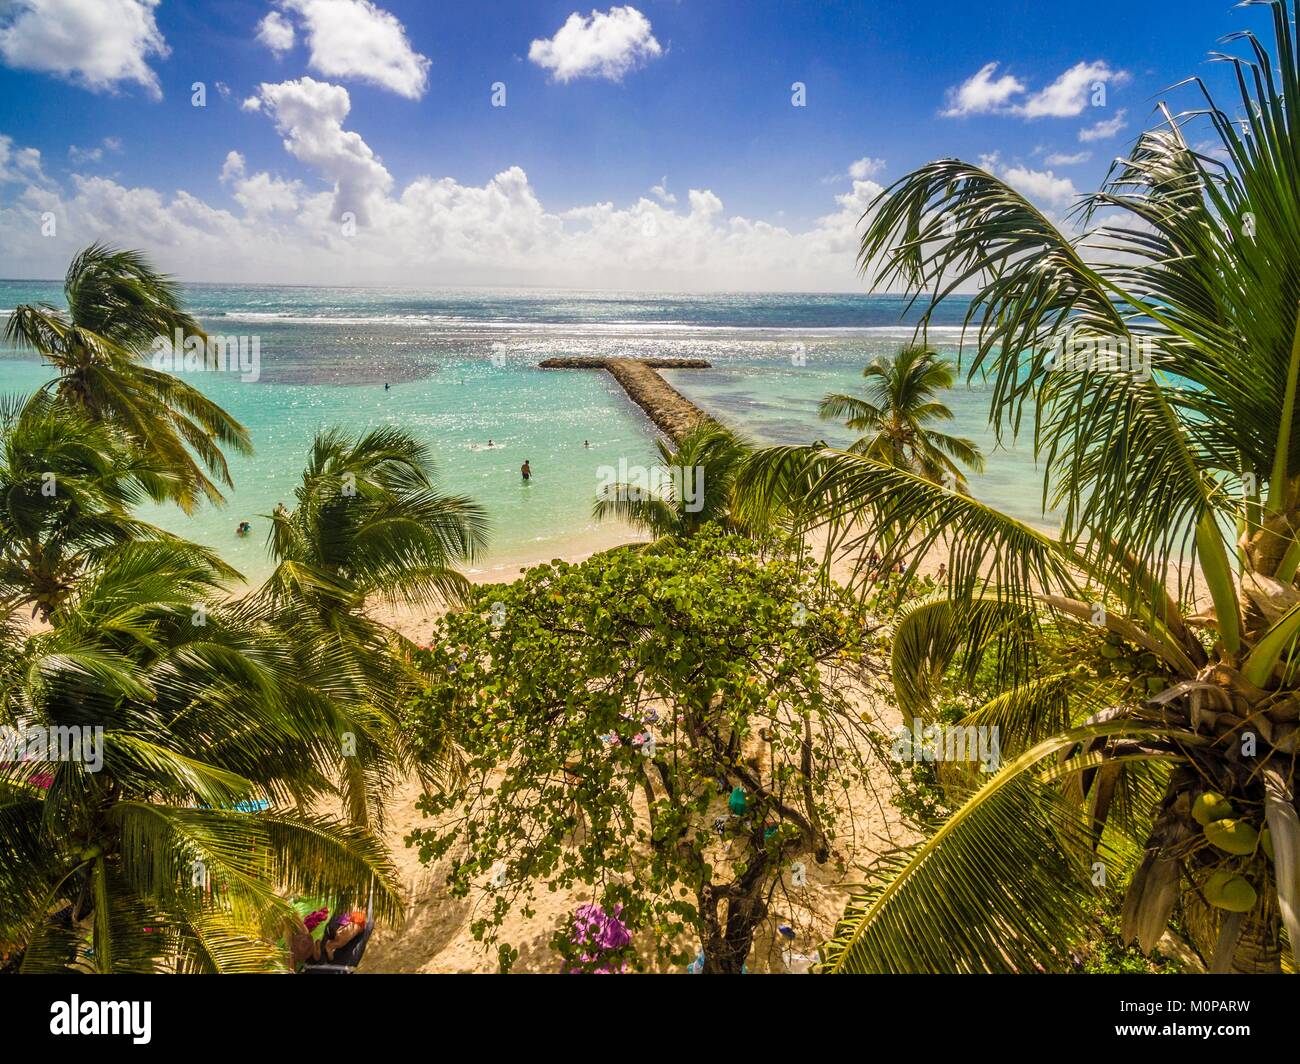 France,Caraïbes Petites Antilles, la Guadeloupe, Grande-Terre,,Sainte Anne,vue aérienne de la plage municipale et son lagon (vue aérienne) Banque D'Images